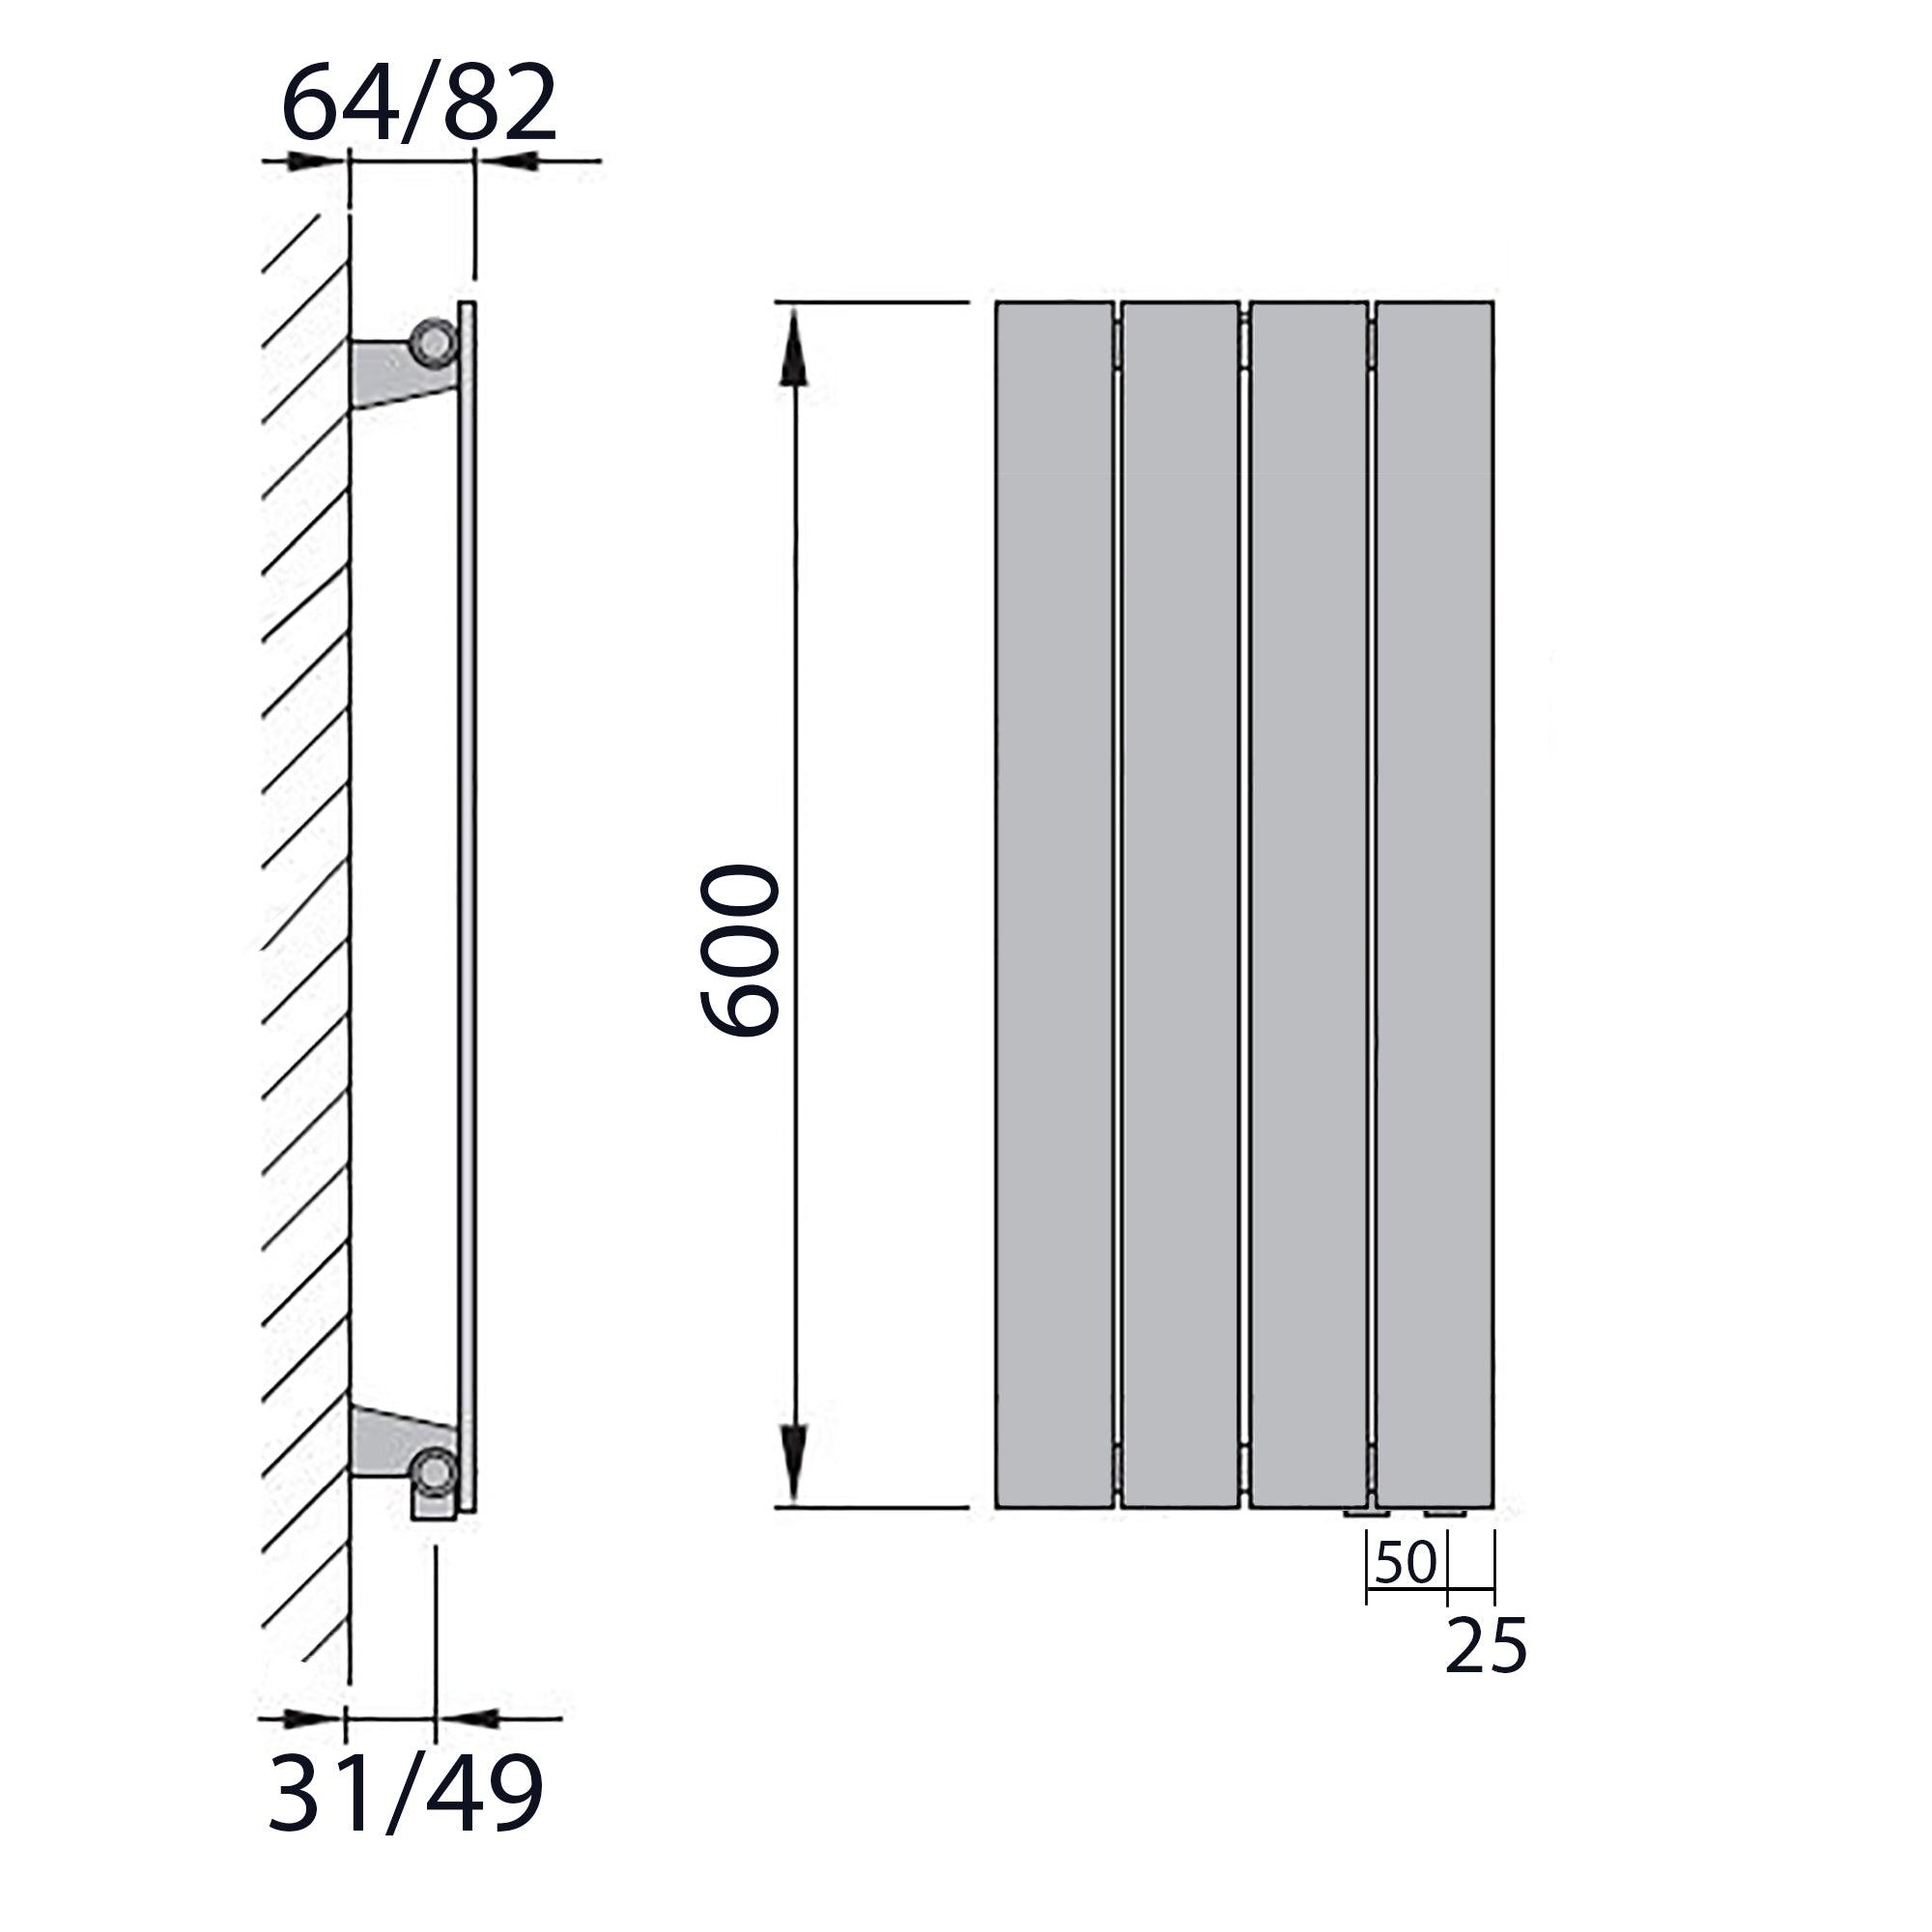 Design Paneelheizkörper Bad Flachheizkörper 600 x 298 mit Anschluss rechts | mit versetztem Mittelanschluss flach technische Zeichnung - heizkoerper.shop